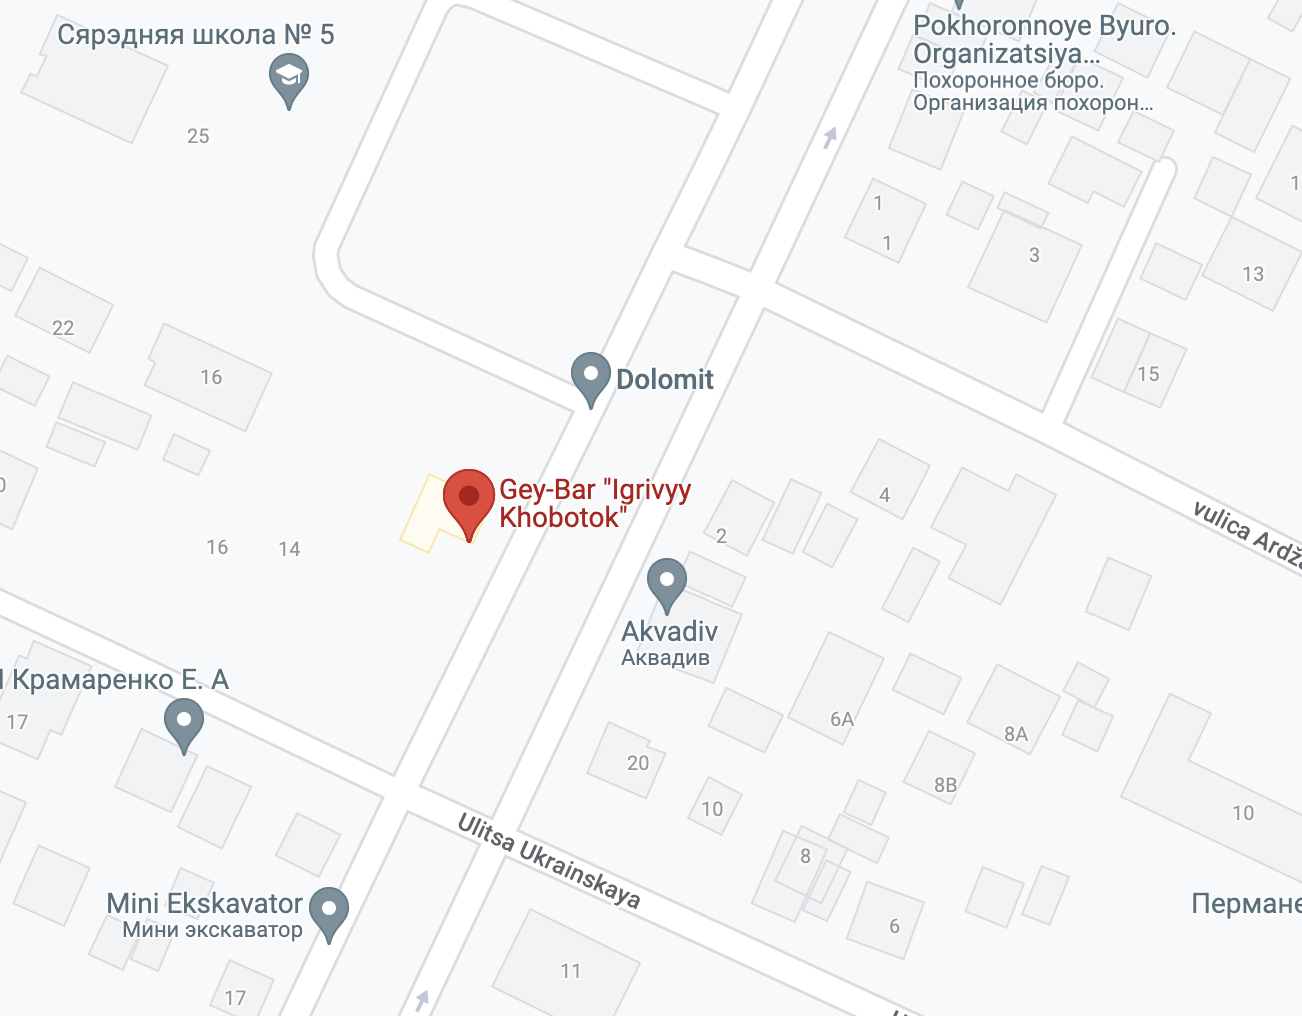 В Минске предложили закрыть гей-клубы и переименовать улицу в честь Сталина  - CityDog.io